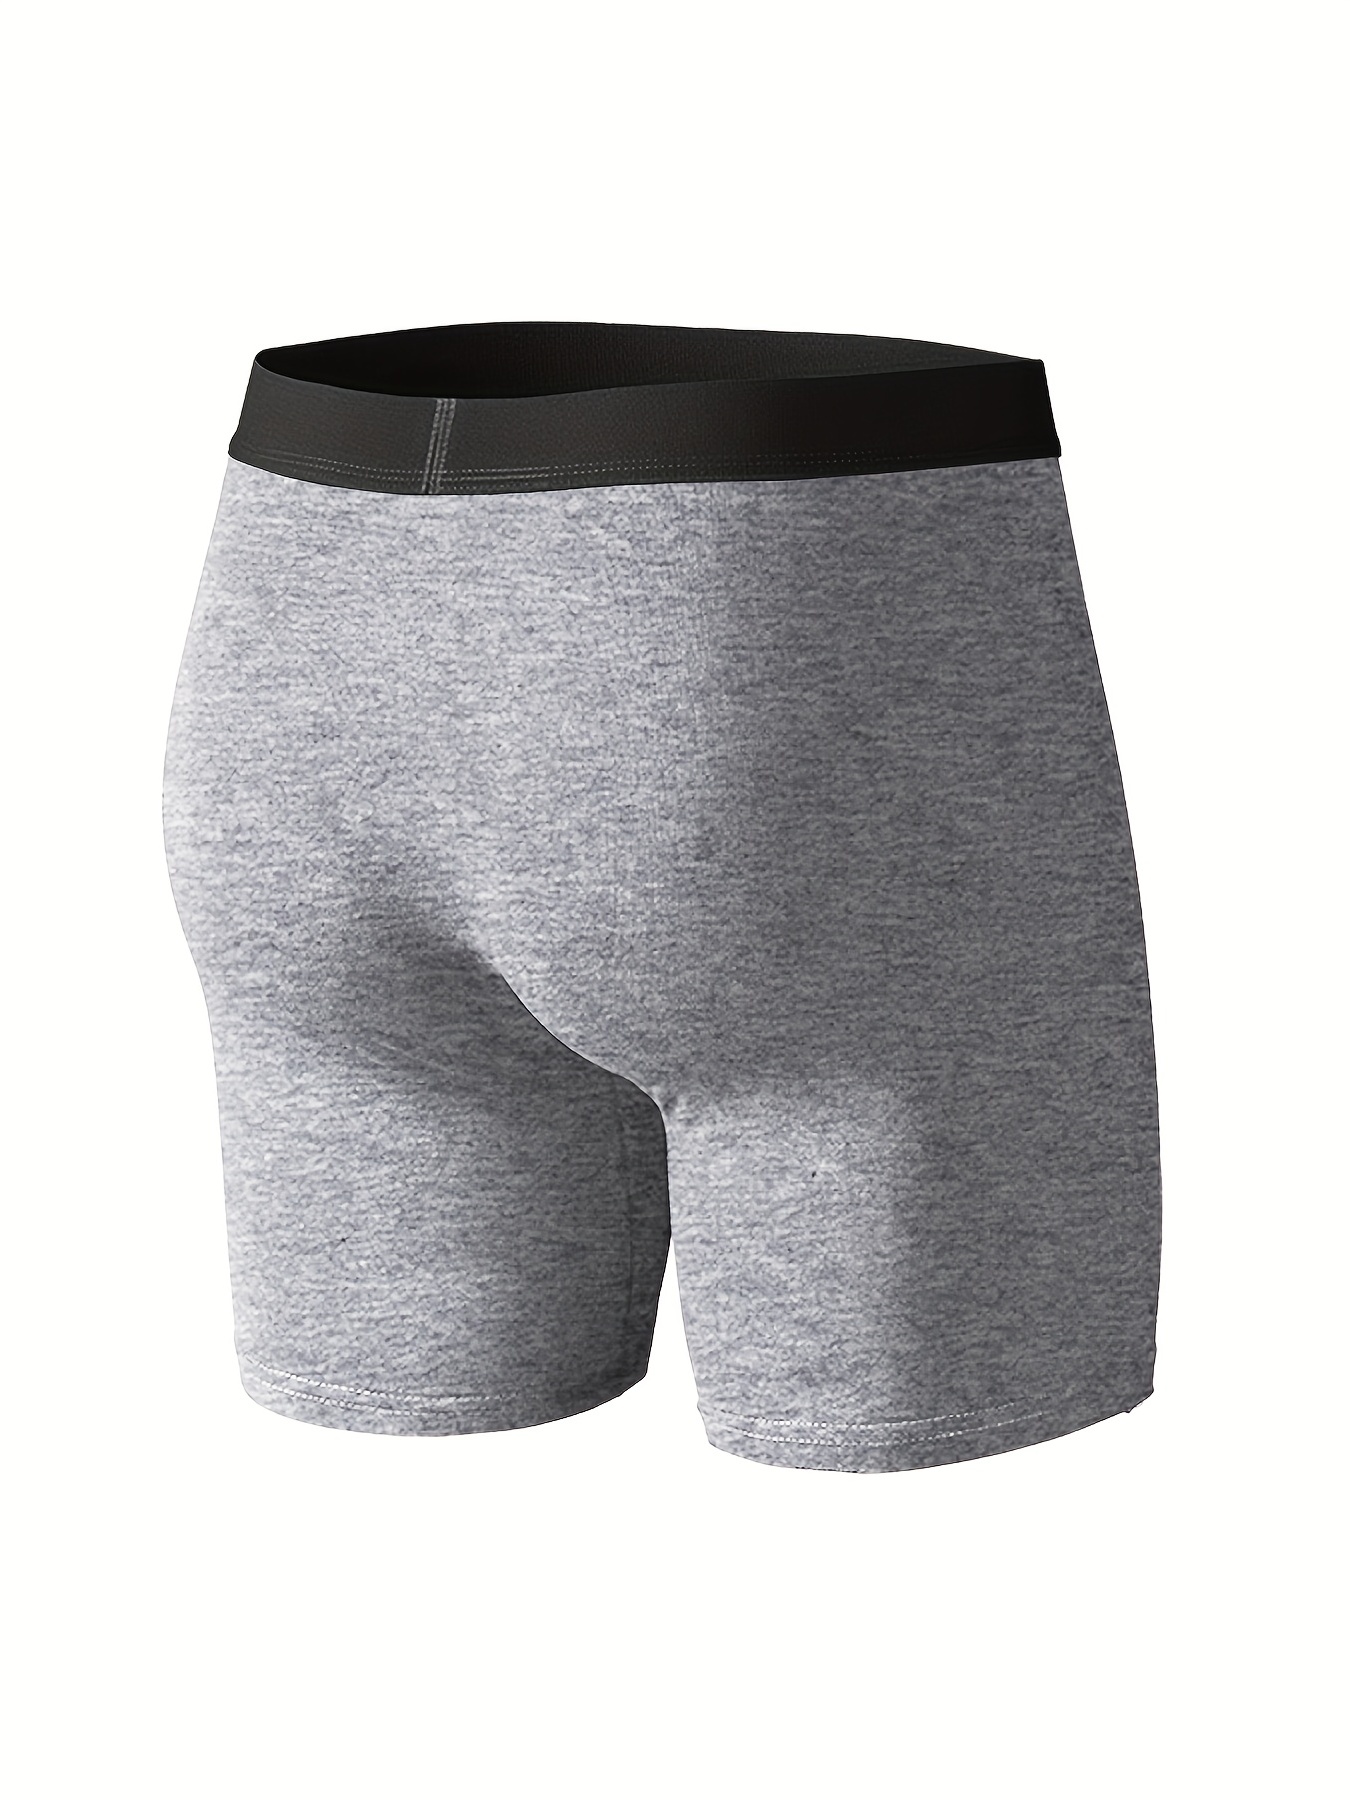 Men's Underwear, Plain Color Stretch Fashion Breathable Comfy